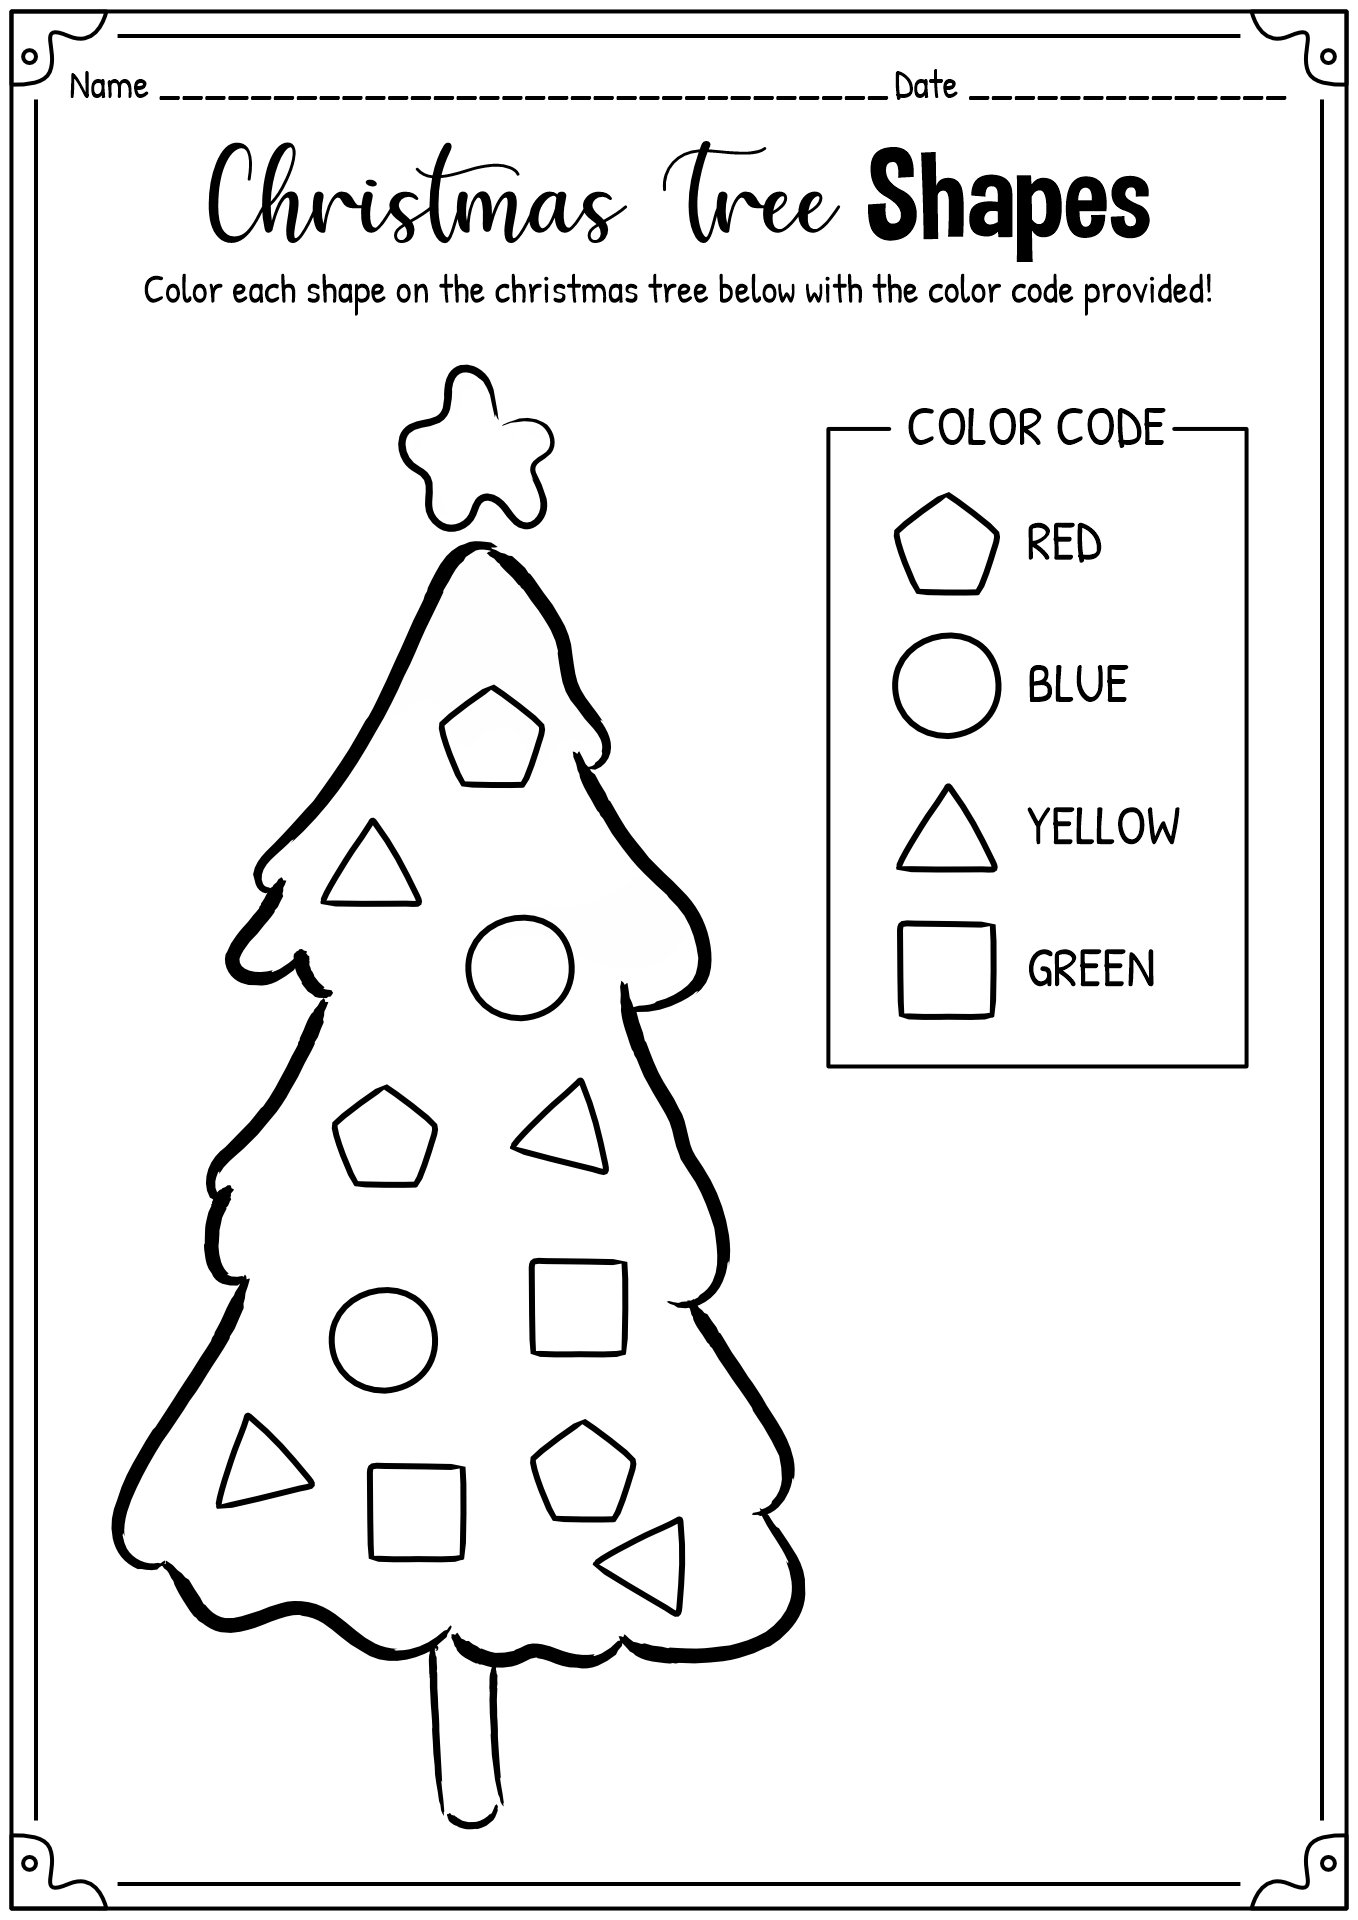 Christmas Tree Shapes Worksheet Image